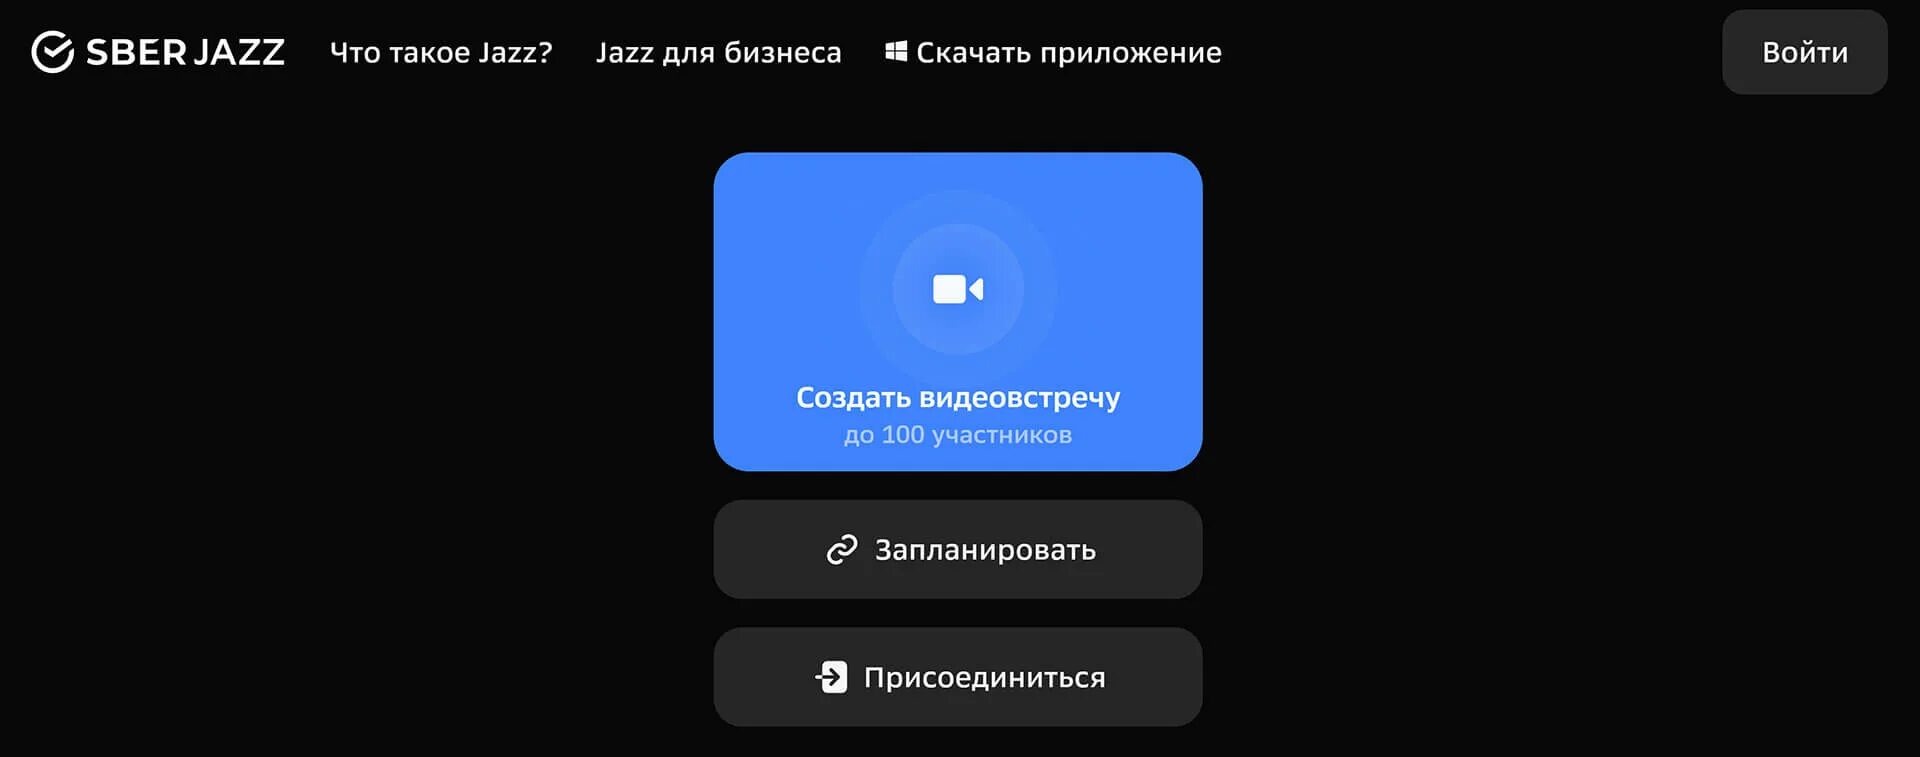 Салют джаз. Сбер джаз. Джаз Сбер видеоконференция. Jazz приложение. Демонстрация экрана в джаз Сбер.